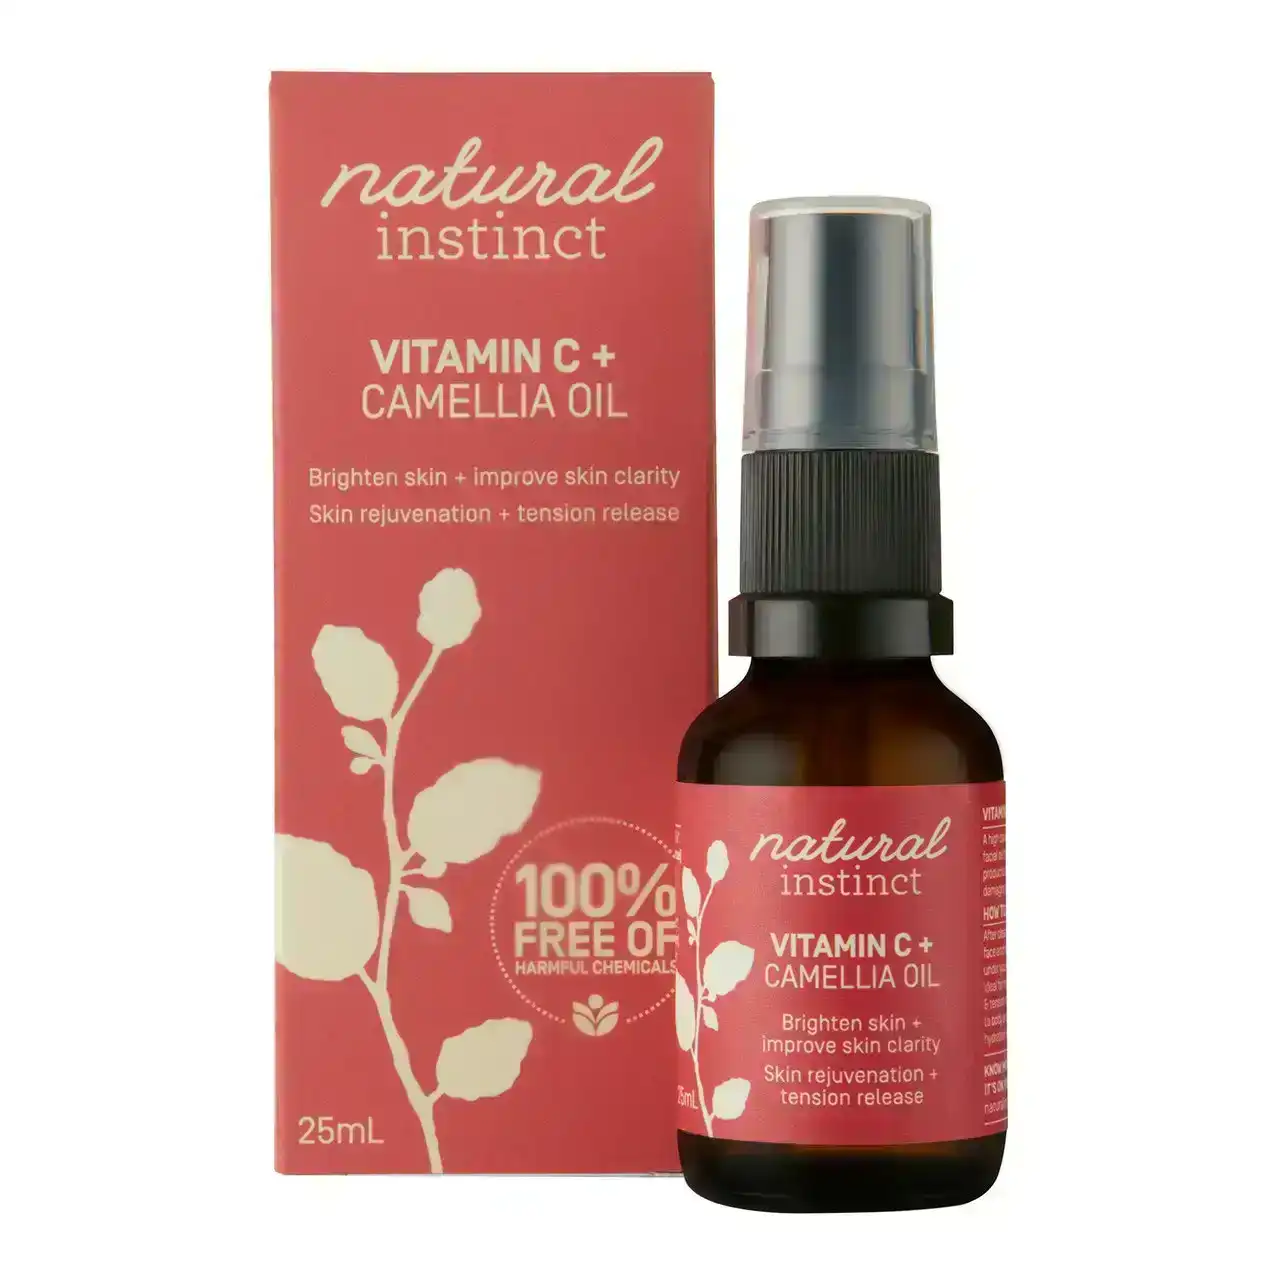 Natural Instinct Vitamin C + Camellia Oil 25ml